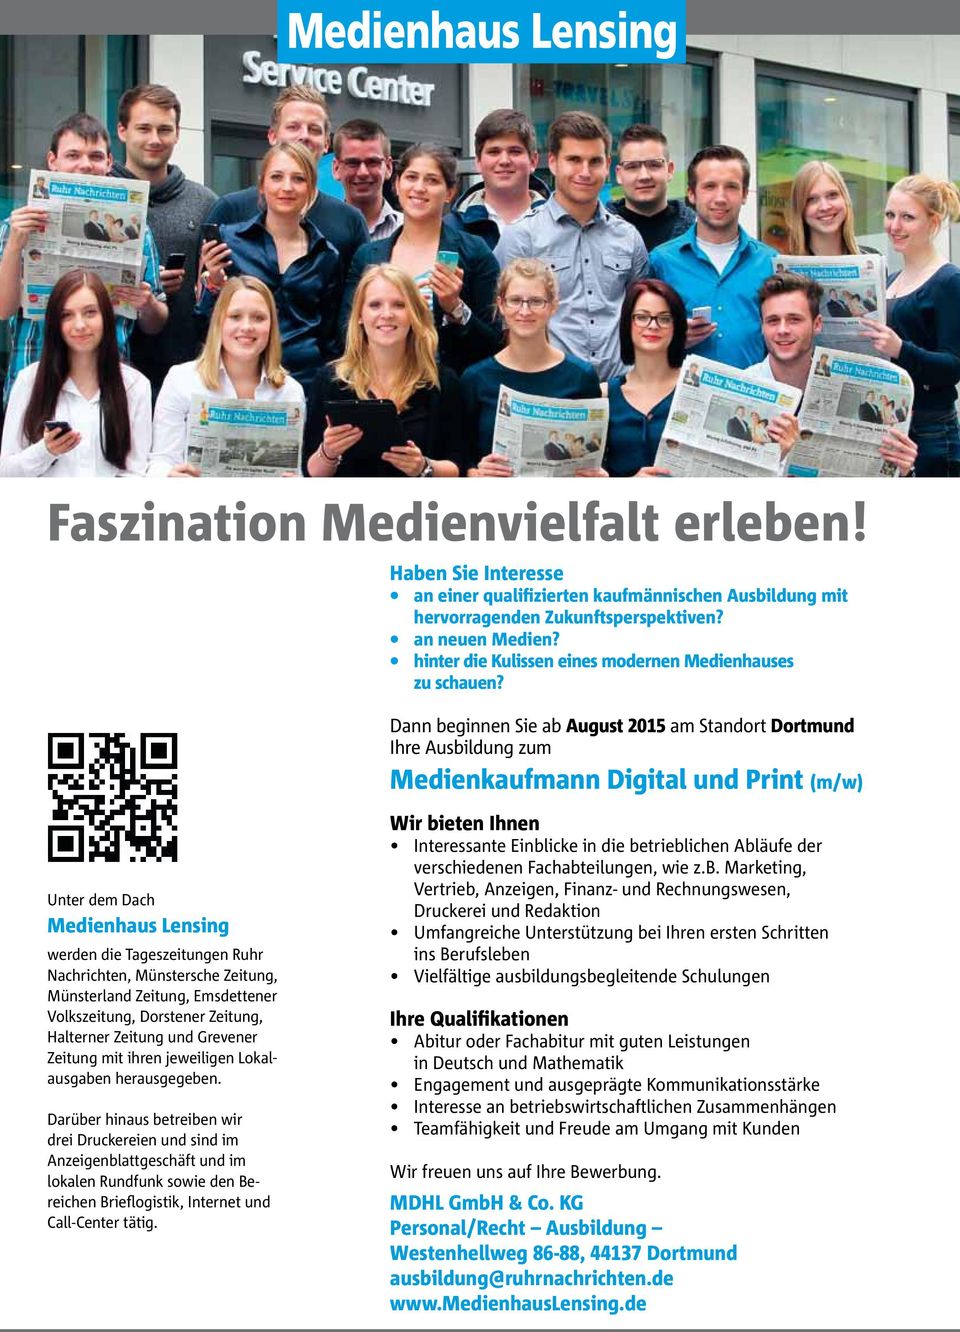 Dann beginnen Sie ab August 2015 am Standort Dortmund Ihre Ausbildung zum Medienkaufmann Digital und Print (m/w) Unter dem Dach Medienhaus Lensing werden die Tageszeitungen Ruhr Nachrichten,